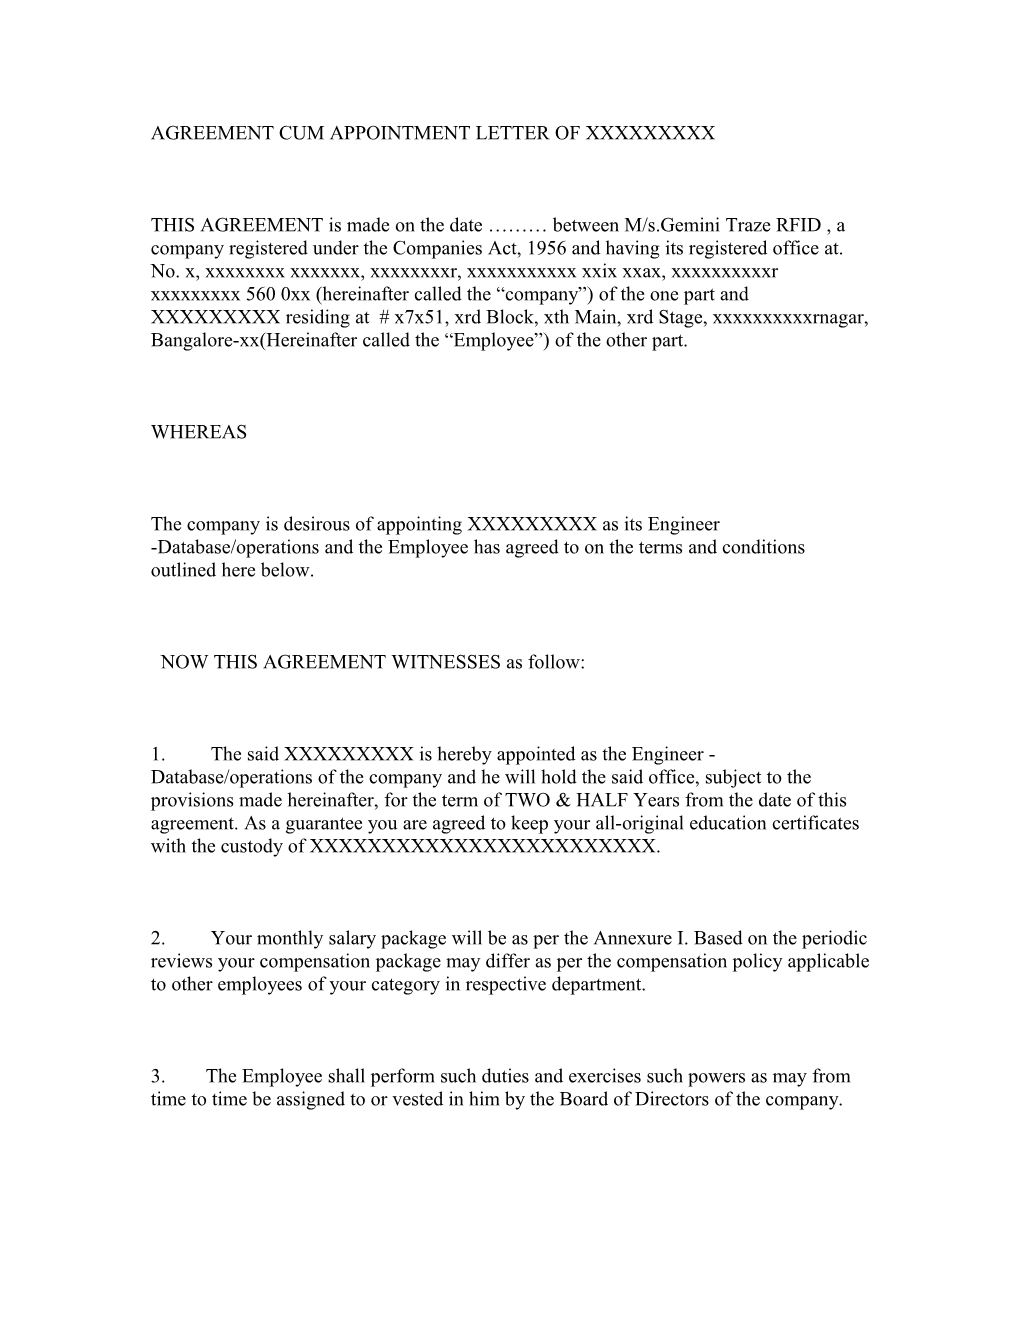 Agreement Cum Appointment Letter of Xxxxxxxxx